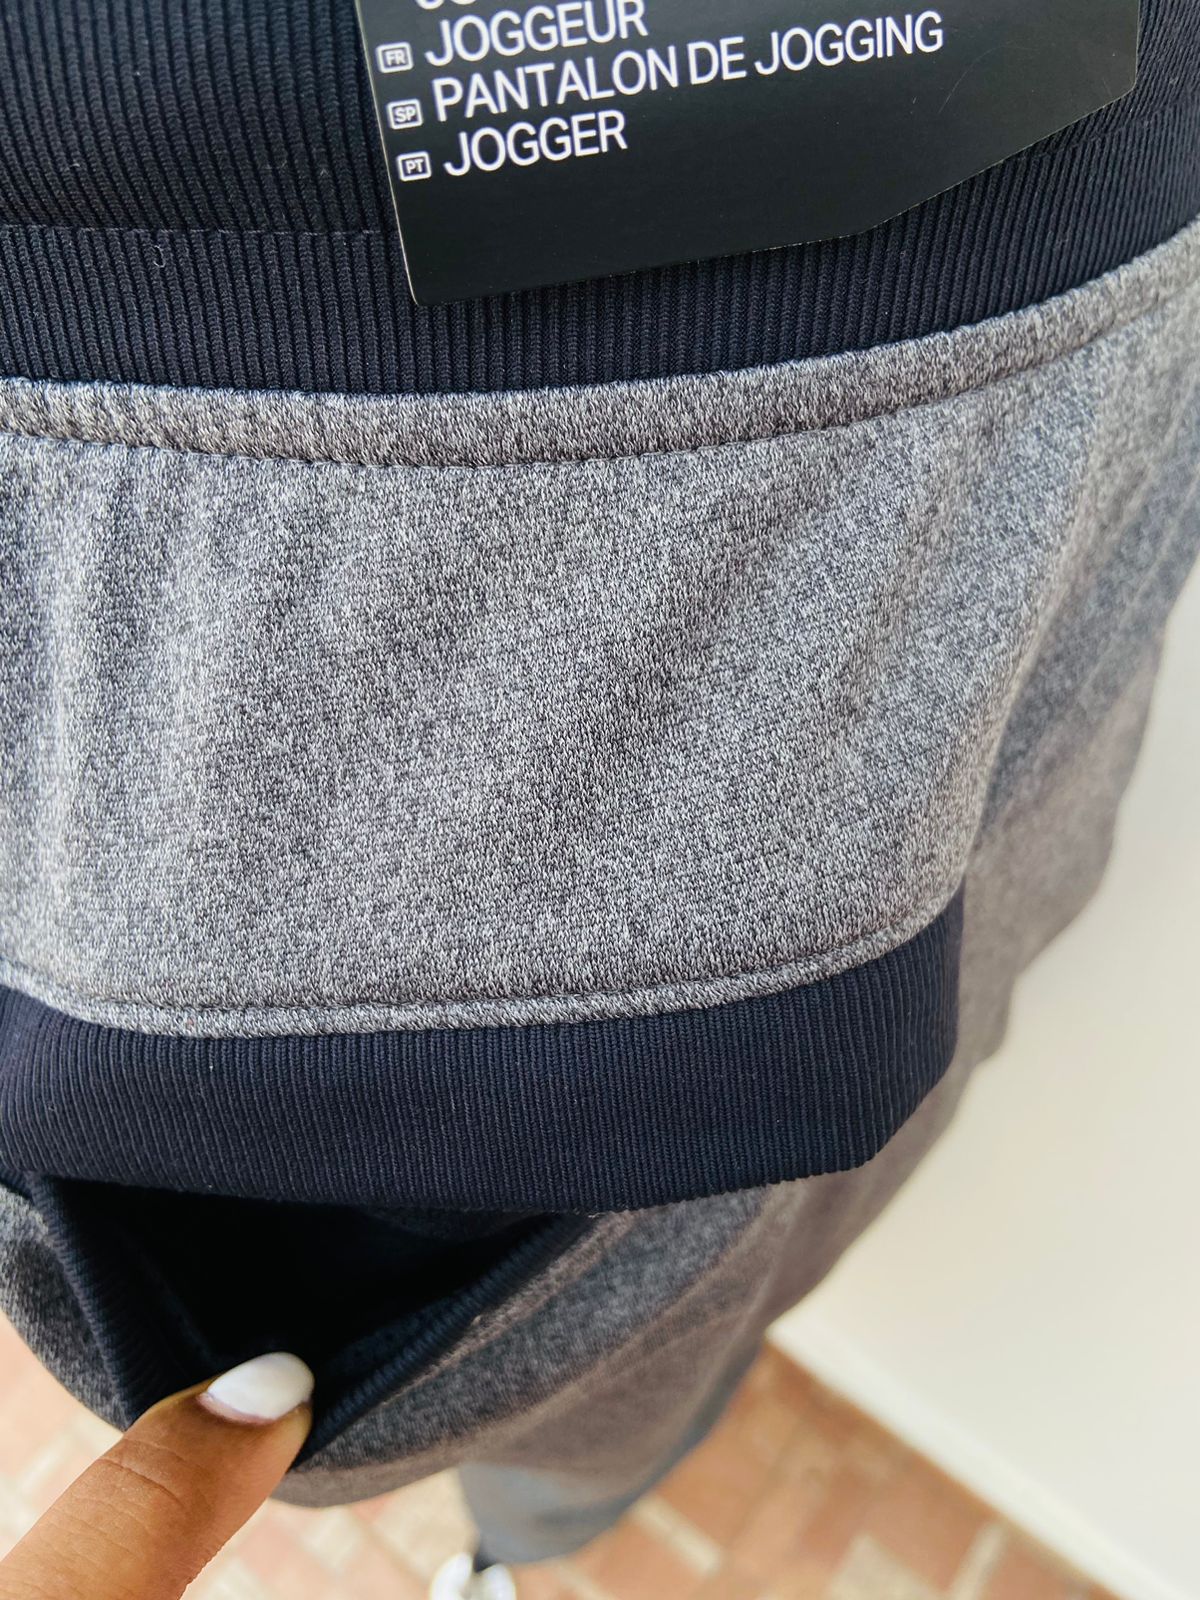 Pantalon/ Jogger UNDER ARMOUR original, gris oscuro con elástico de la cintura y borde de los bolsillos en color negro.